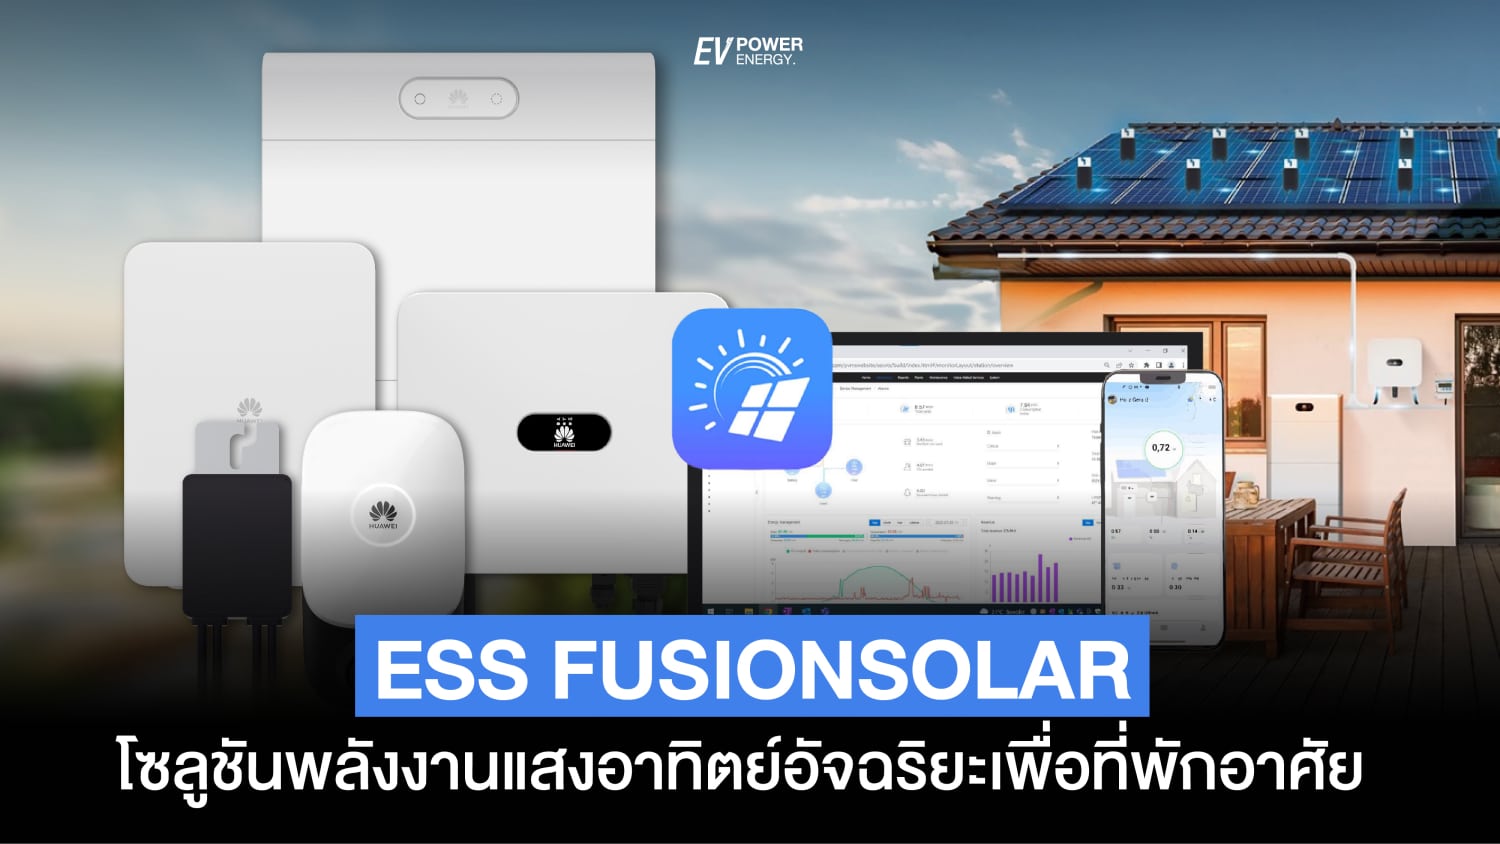 ESS Fusion Solar โซลูชัน พลังงานแสงอาทิตย์ อัจฉริยะ เพื่อที่พักอาศัย